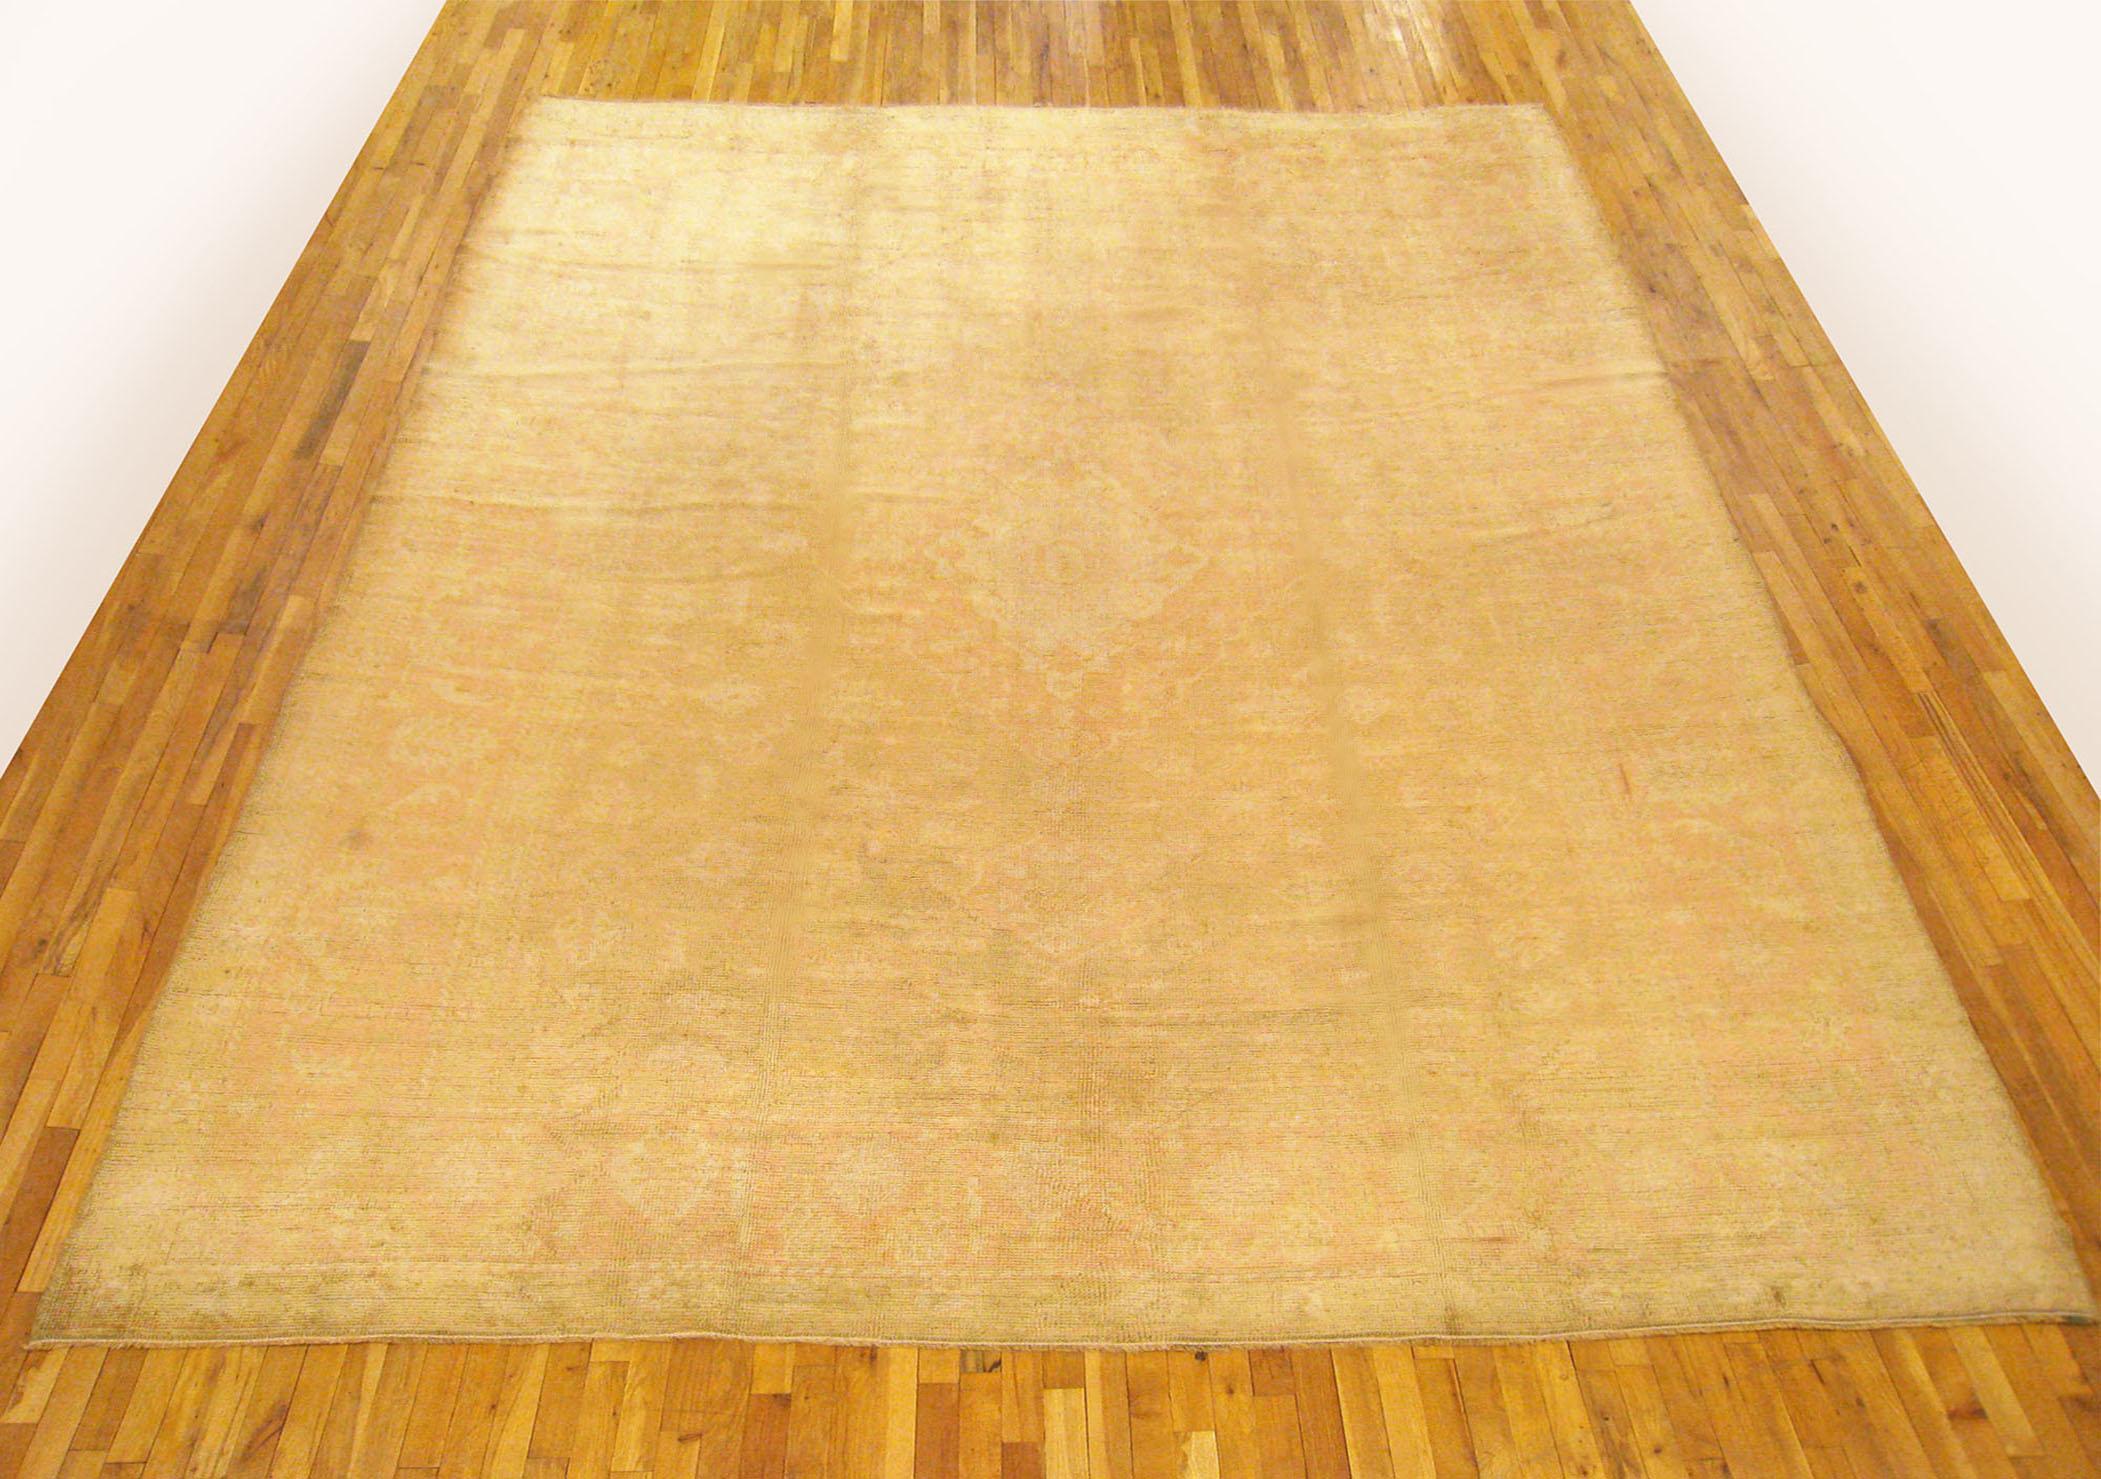 Antiker türkischer Oushak Orientteppich, Zimmergröße, mit grünem Feld.

Eine wunderschöne antike türkische Oushak Teppich, um 1900, Größe 13'4 